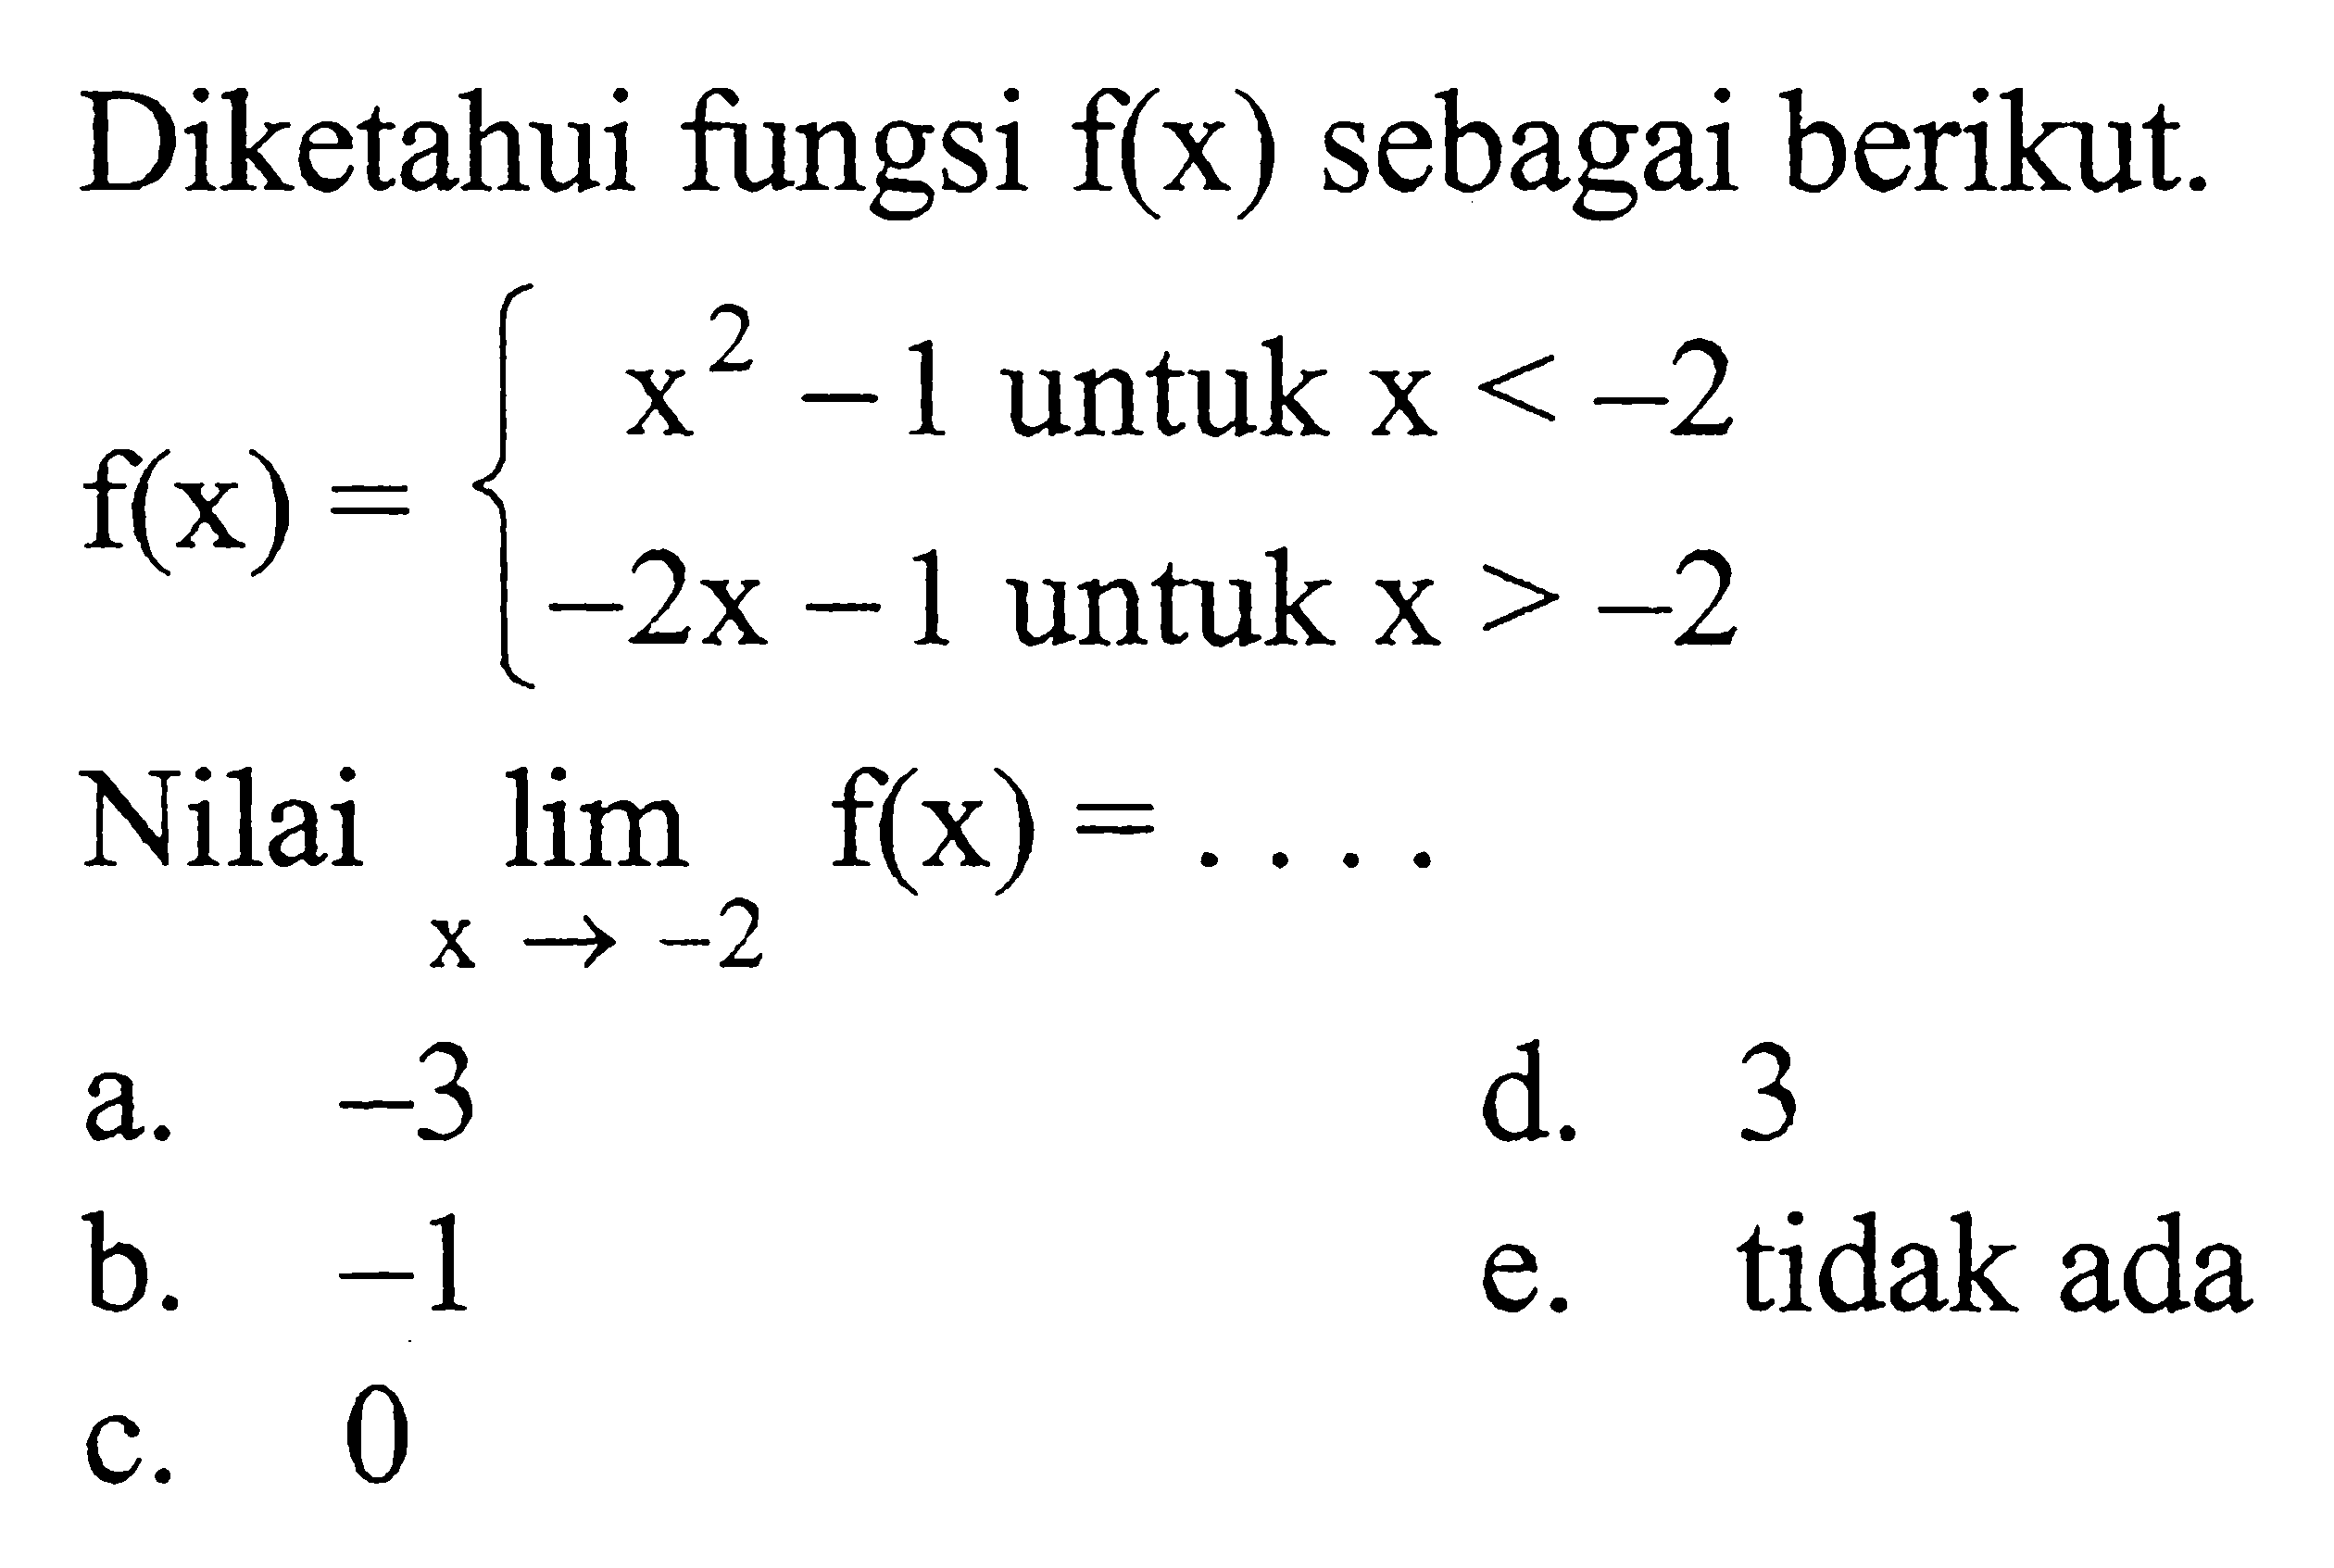 Diketahui fungsi f(x) sebagai berikut. f(x)=x^2-1 untuk x<-2, -2x-1 untuk x>-2. Nilai lim x->-2 f(x) = ... 